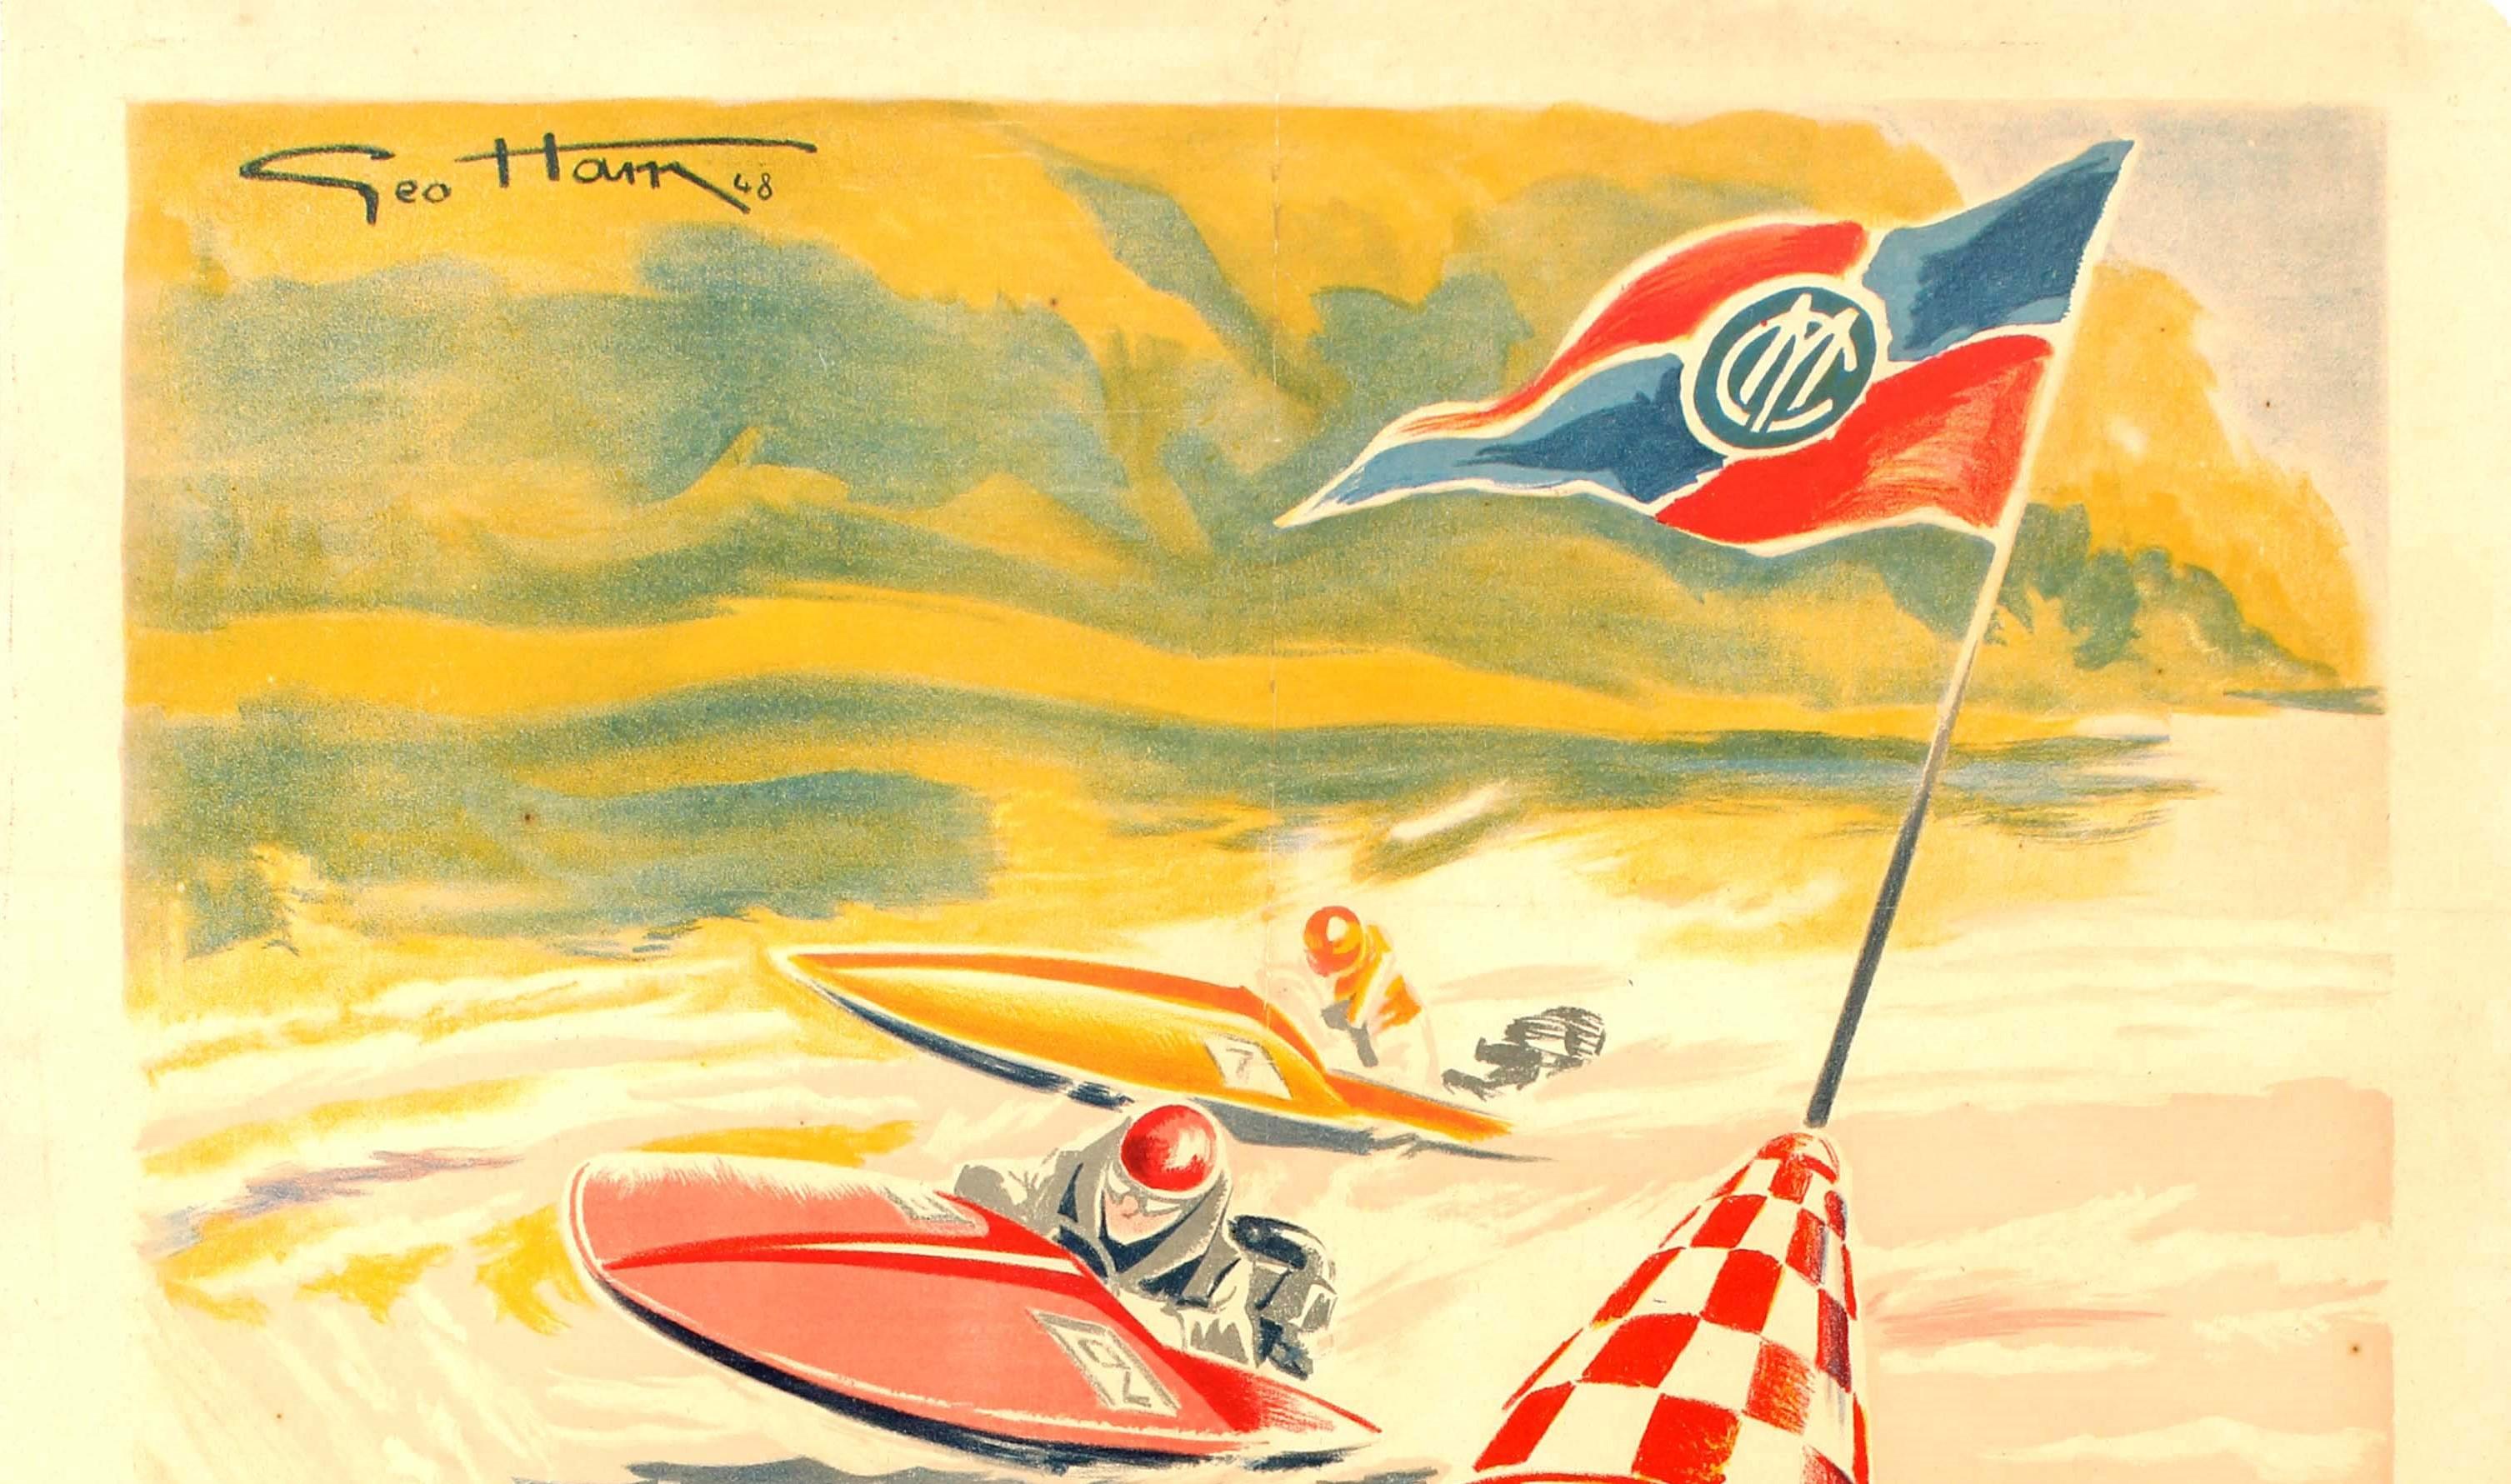 Original-Wassersportplakat für das Grand Meeting International Motonautique, das am 12. und 13. Juni 1948 im Bassin Du Trocadero stattfand, mit einer dynamischen Illustration von Geo Ham (Georges Hamel; 1900-1972) von Rennbooten, die um eine